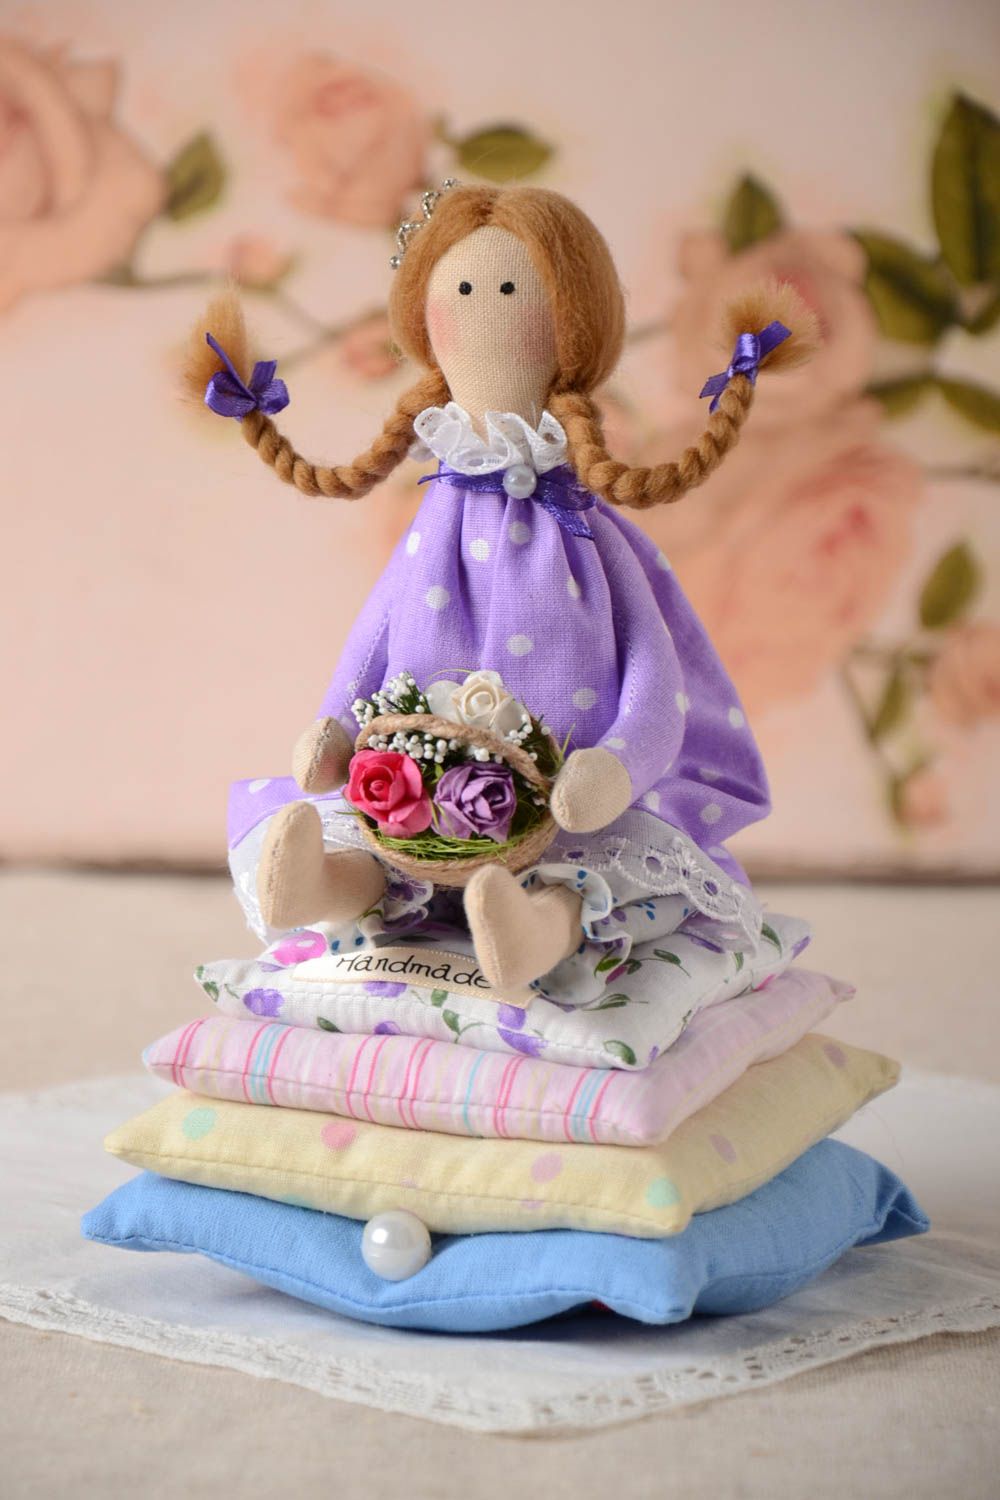 Интерьерная игрушка из хлопка мягкая авторская ручной работы Принцесса с цветами фото 1